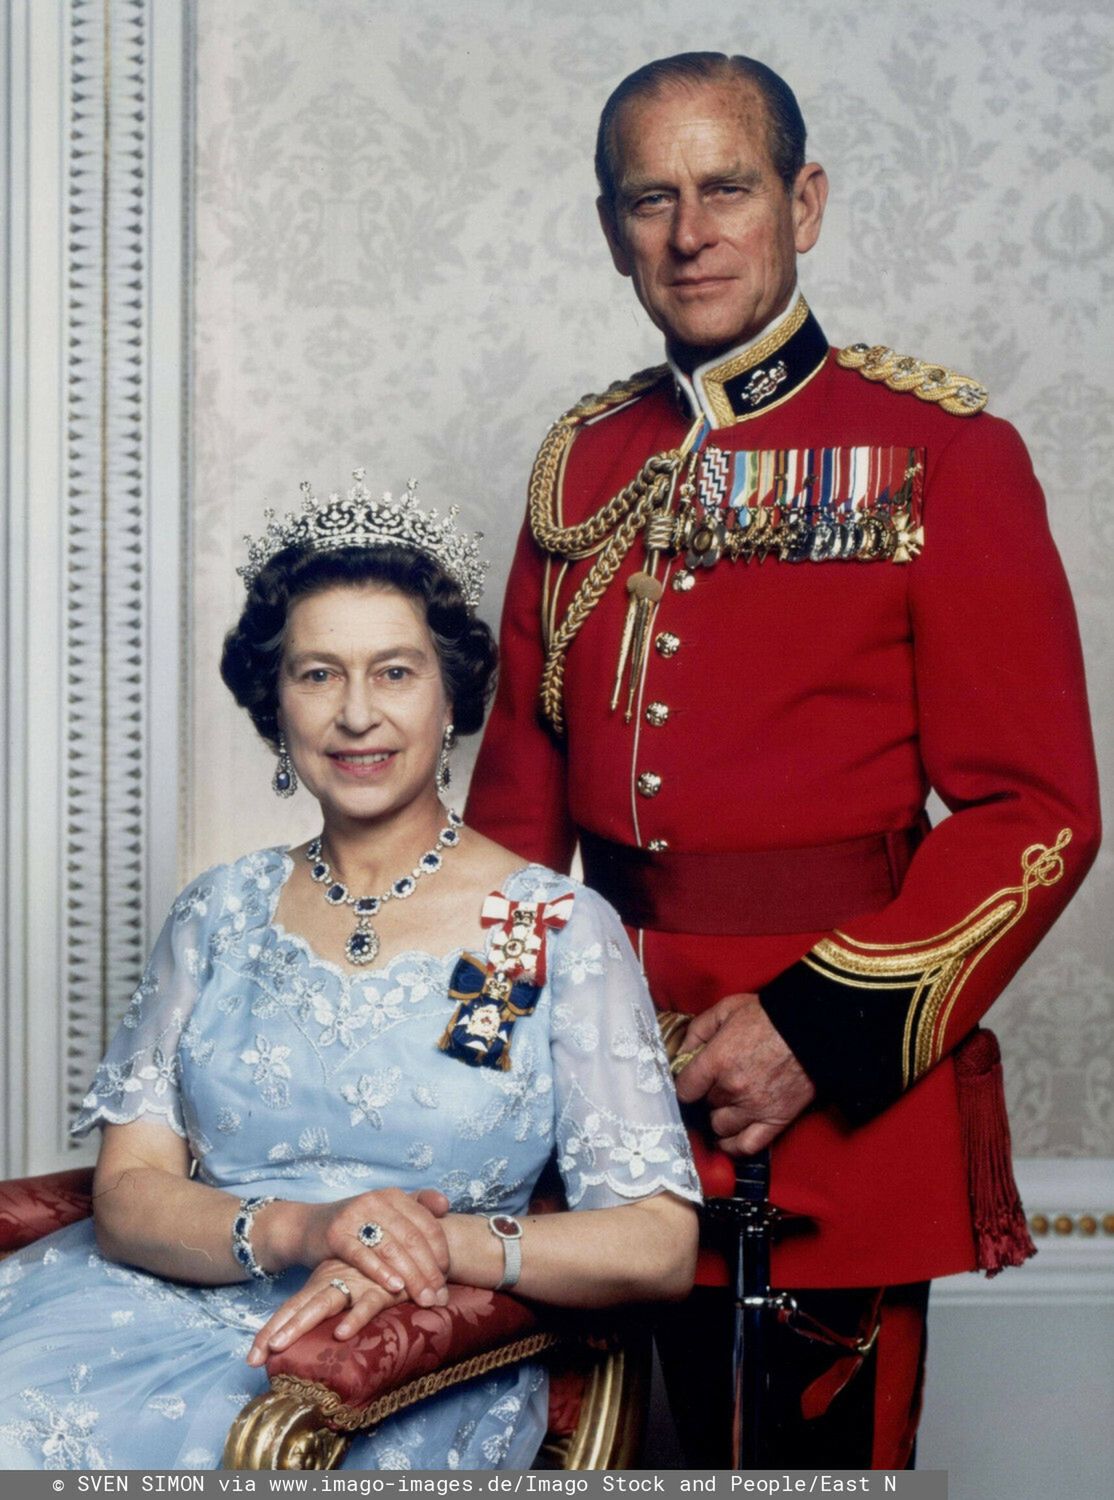 Er wurde 99 Jahre alt Prinz Philip, der Ehemann der Queen, ist tot. Archivfoto Queen ELISABETH II feierte im Jahr 2002 ihr 50jaehriges Thronjubilaeum. Stichtag ist der 06. Februar 2002, an dem sich der Todestag ihres Vaters King George VI zum 50. Mal jaehrt und die Thronfolge auf die Monarchin ueberging. Unser Bild zeigt Queen Elisabeth II mit ihrem Ehemann Prinz PHILIPP. *** He was 99 years old Prince Philip, the Queens husband, is dead Archive photo Queen ELISABETH II celebrated her 50th anniversary on the throne in 2002 The date is 6 February 2002, the 50th anniversary of the death of her father King George VI and the passing of the throne to the monarch Our picture shows Queen Elizabeth II with her husband Prince PHILIPP